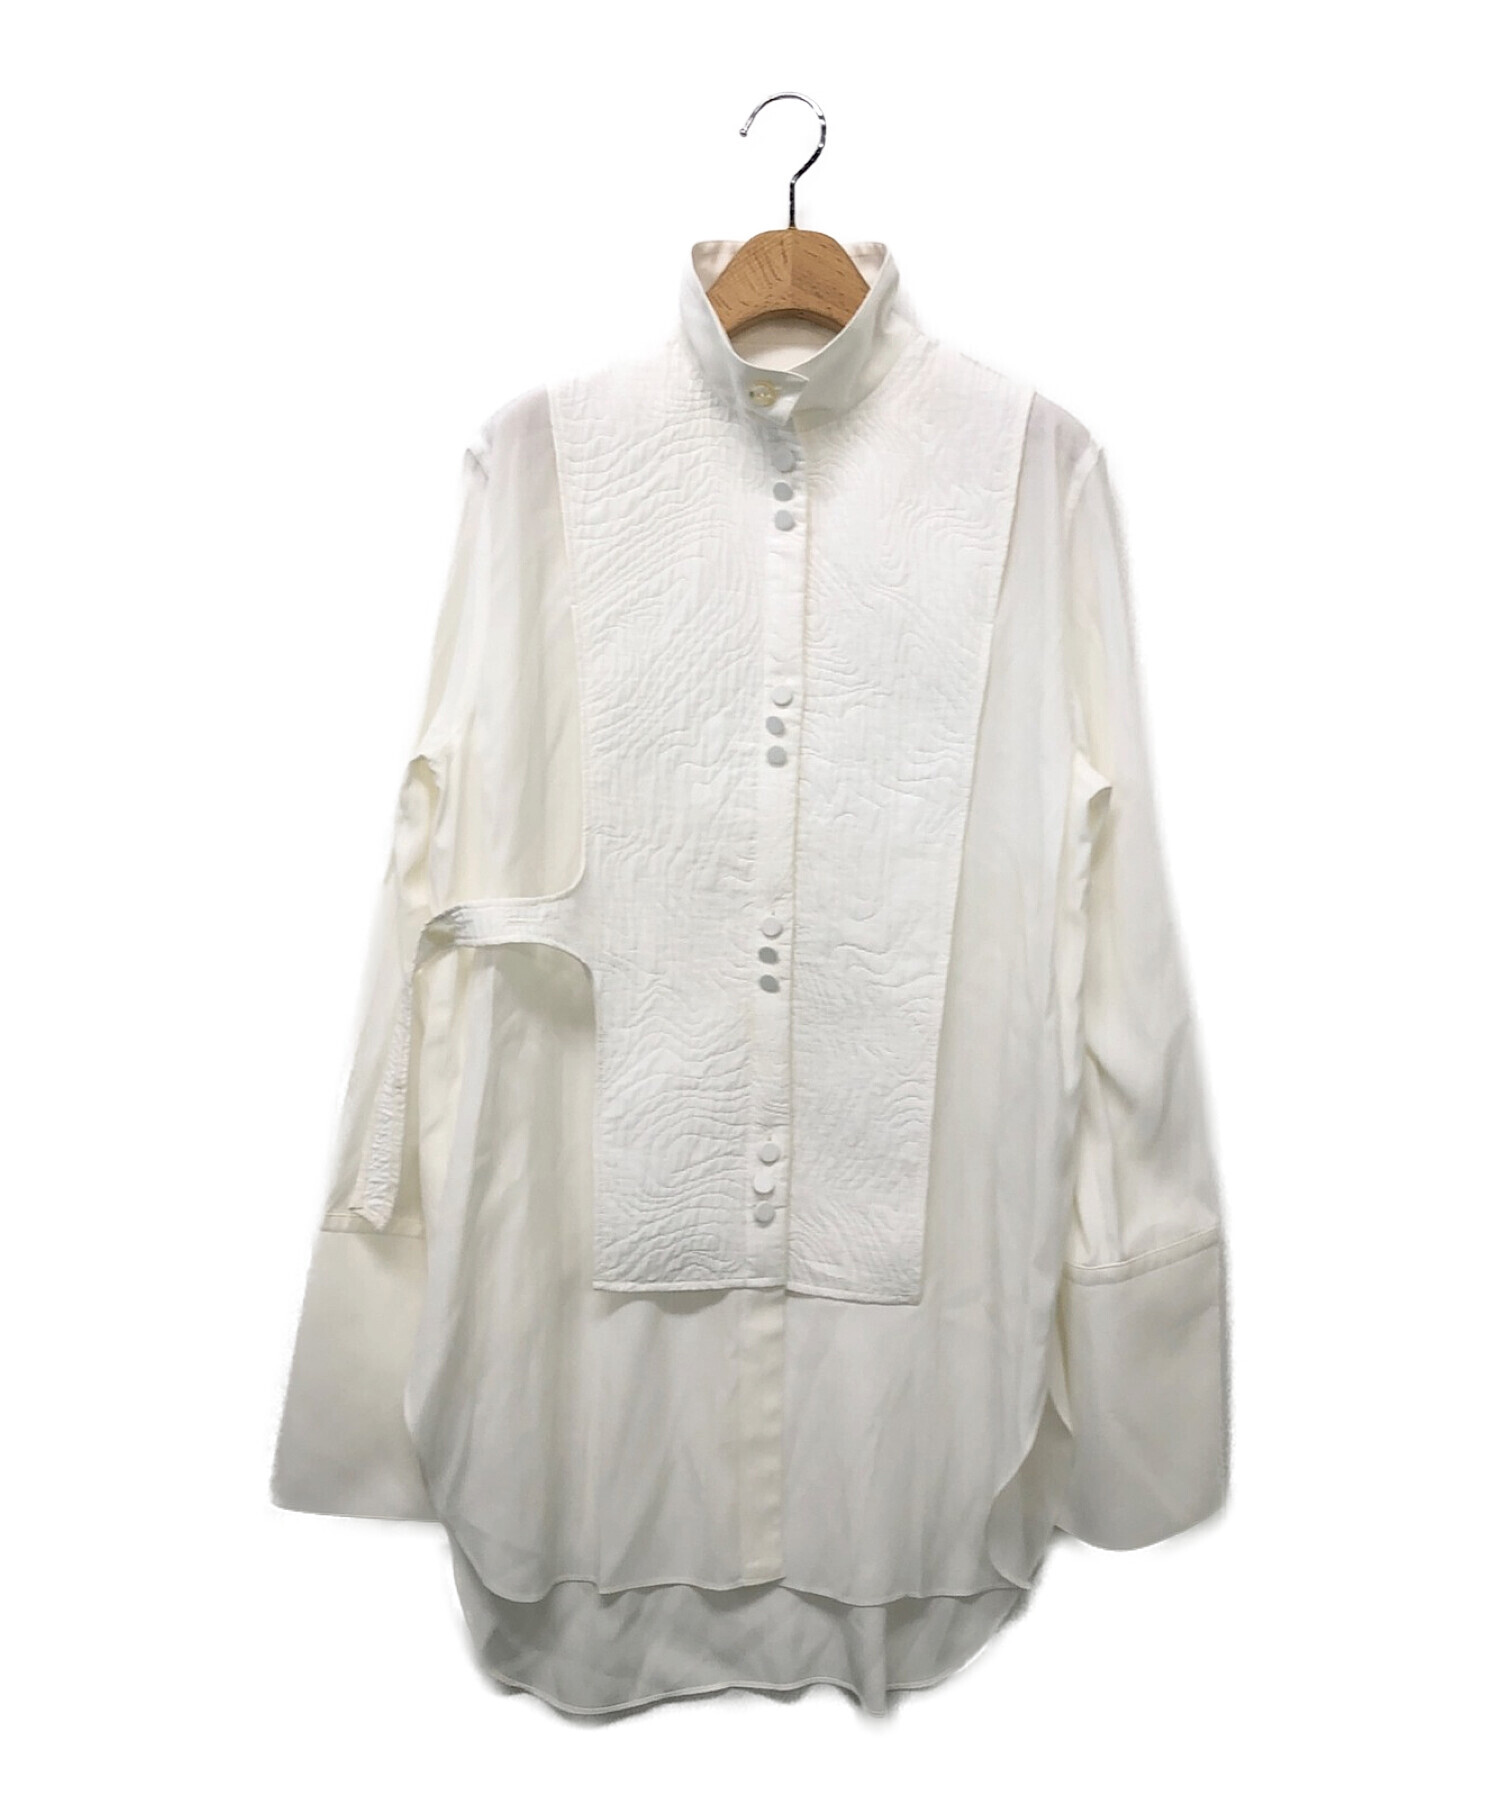 IRENE (アイレネ) キルティングビブシャツ ホワイト サイズ:36